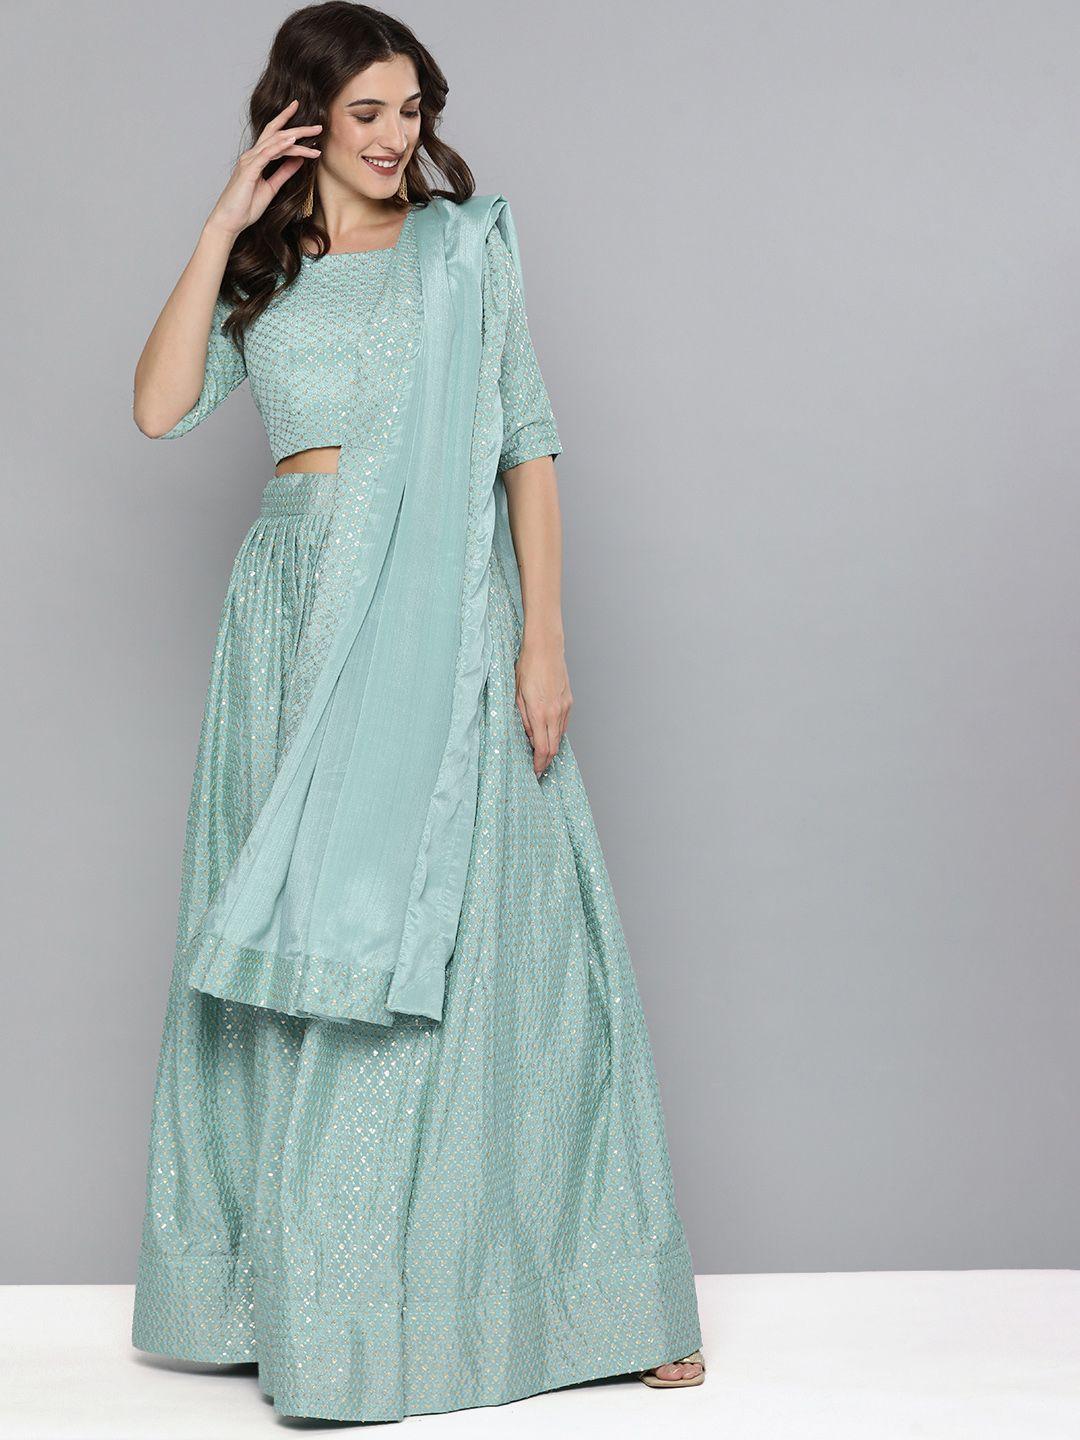 kvsfab turquoise blue embroidered semi-stitched lehenga & unstitched blouse with dupatta